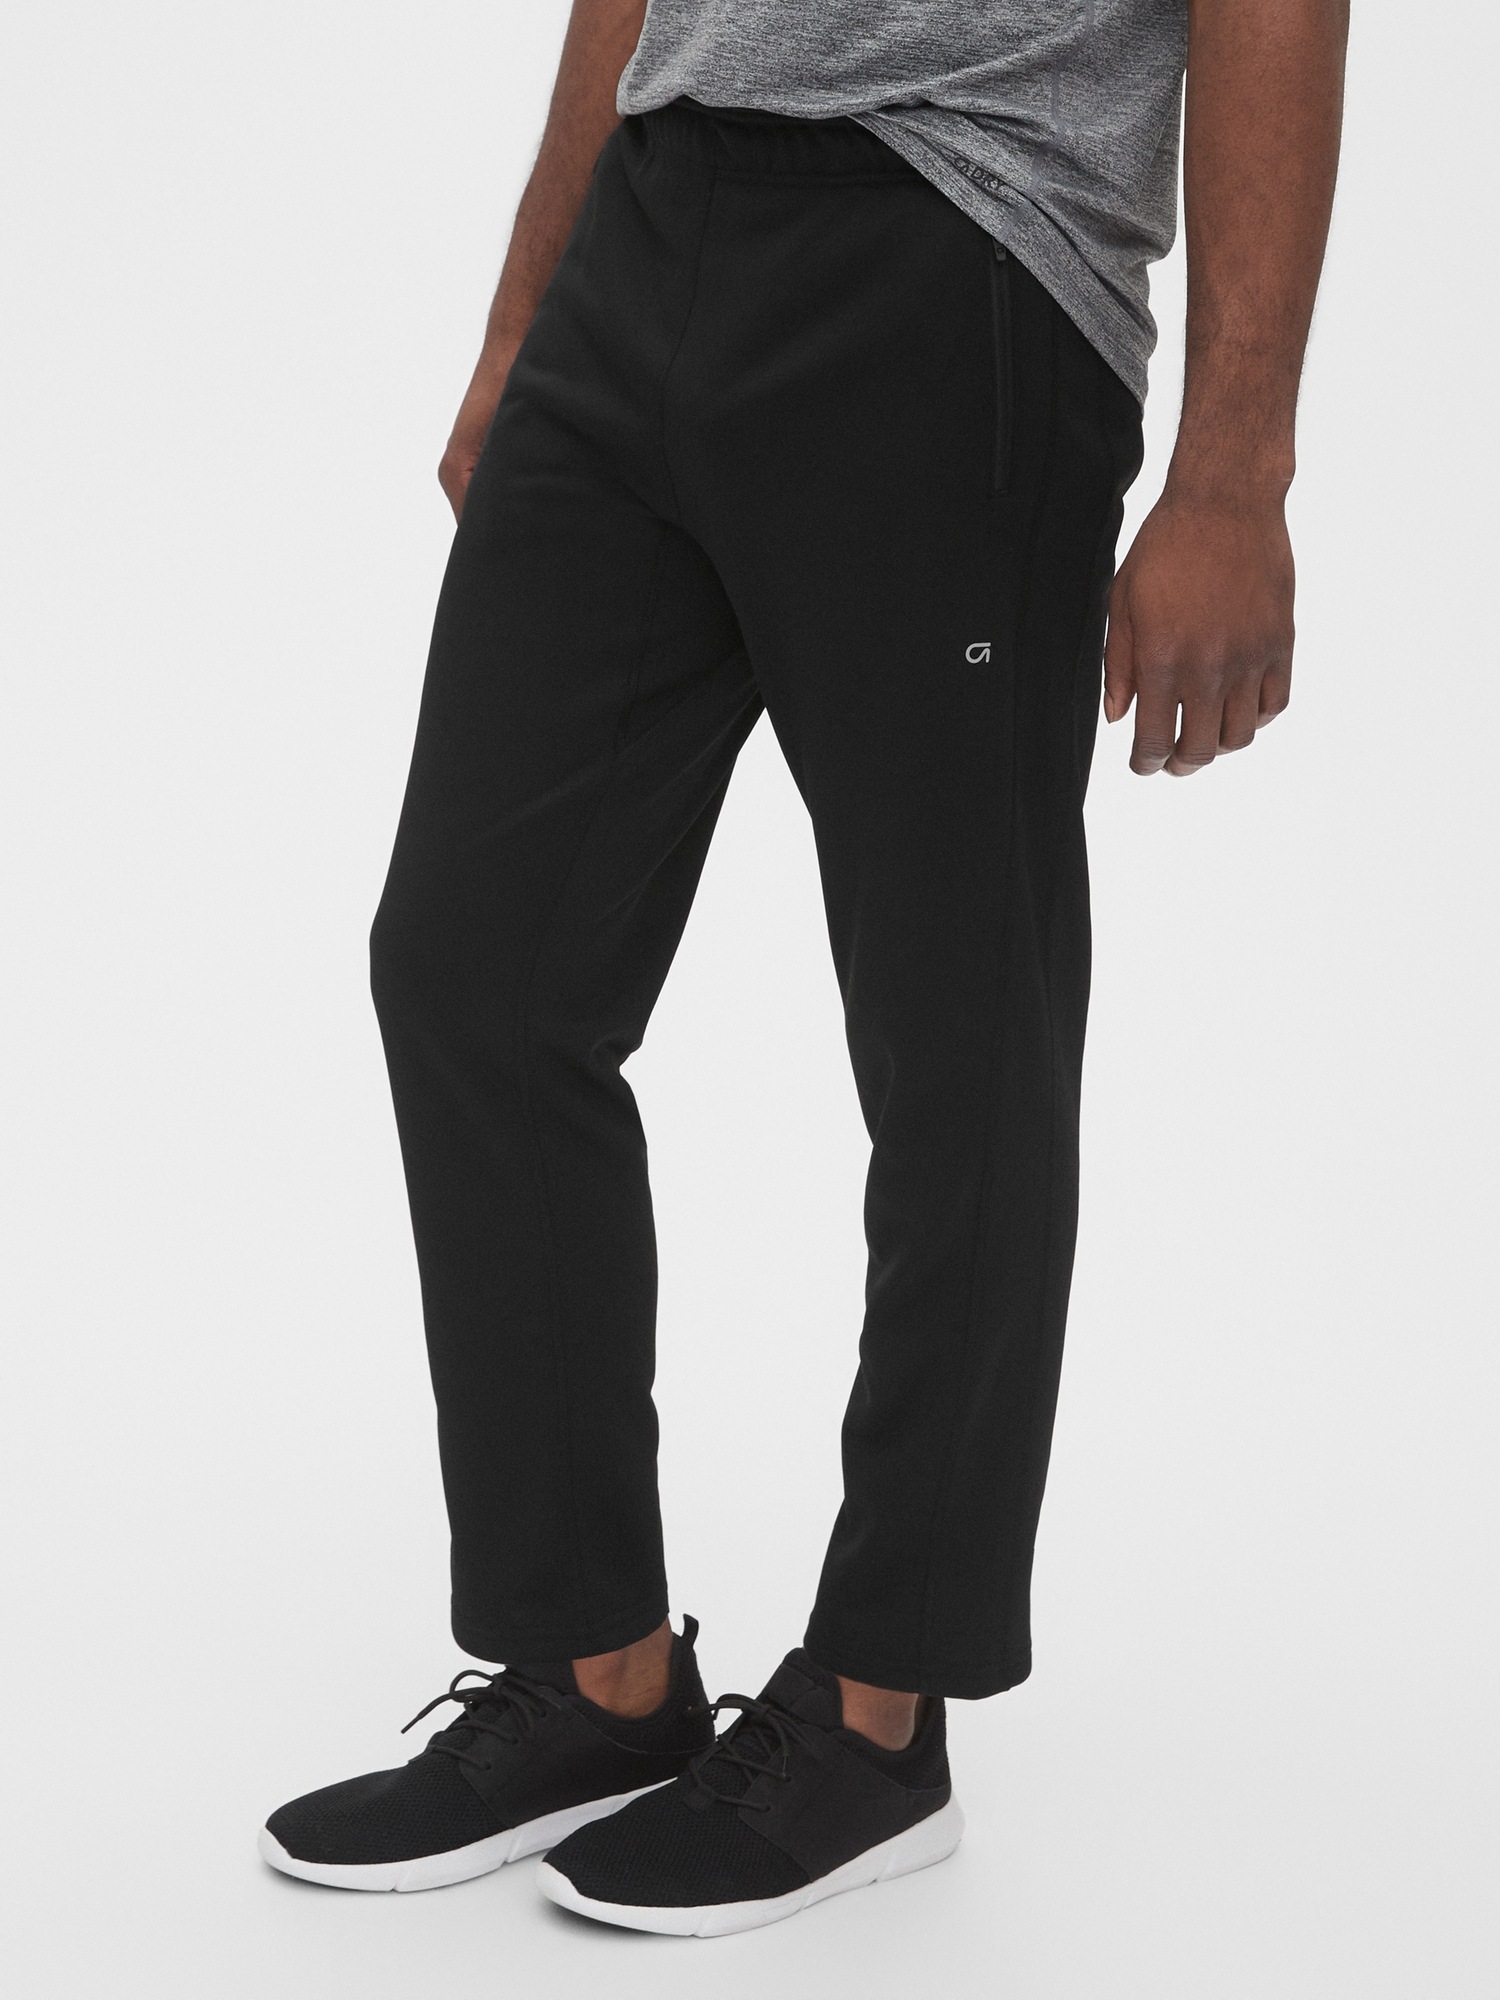 Gap Fit Camo Multi Color Black Active Pants Size XL - 67% off